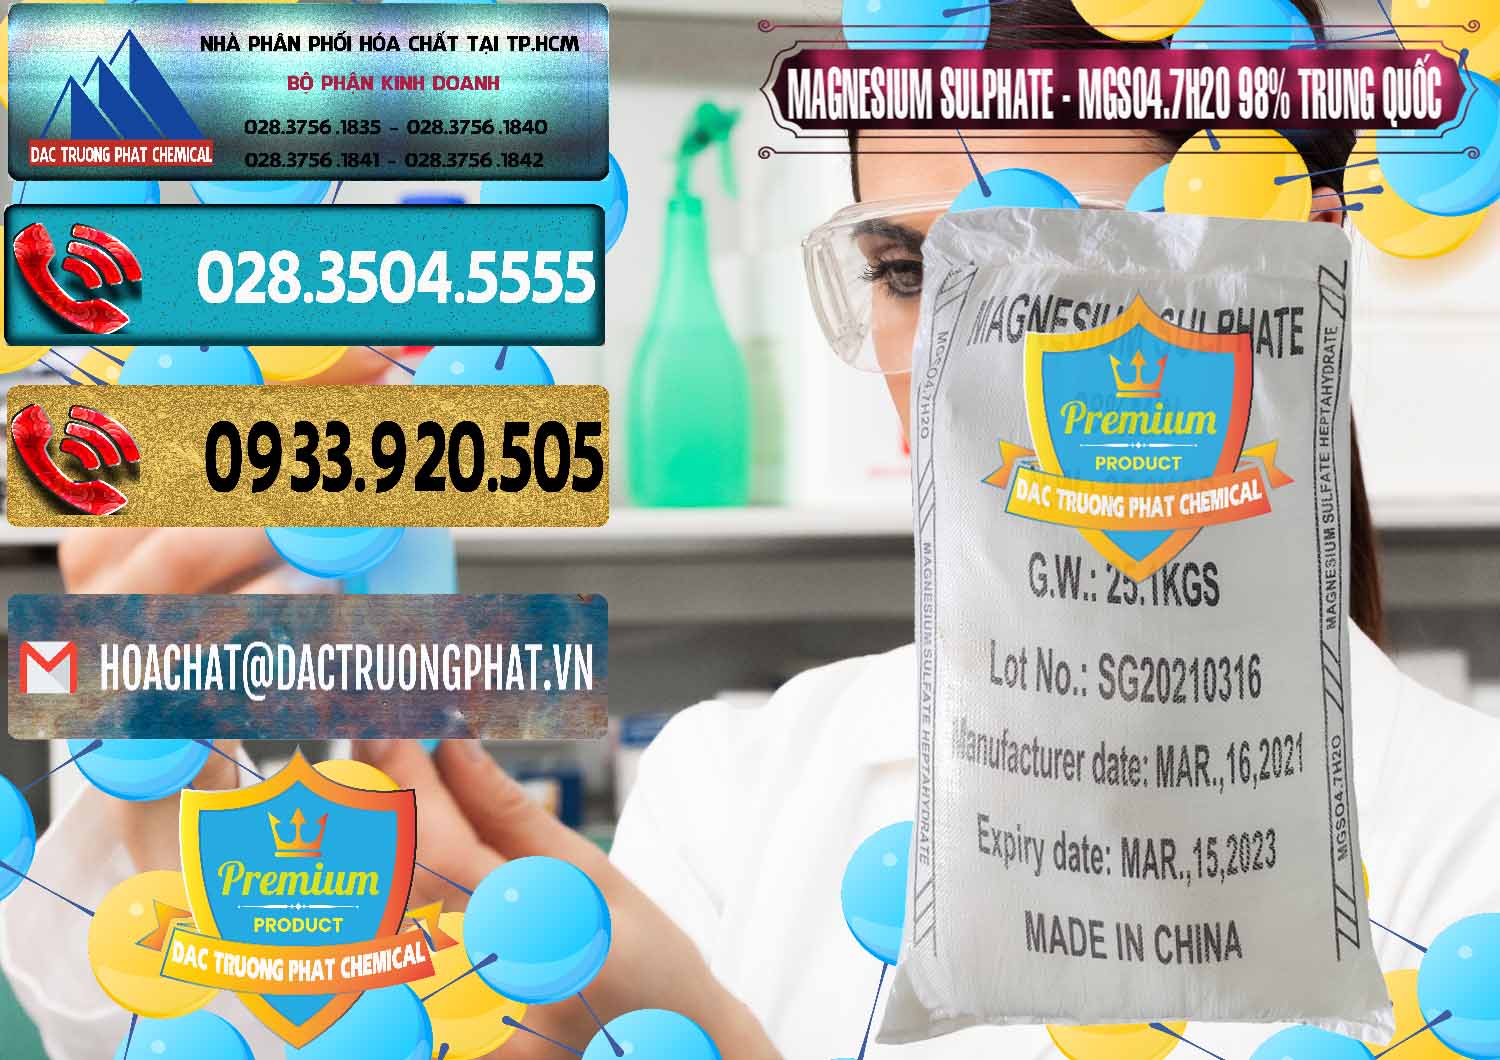 Công ty chuyên phân phối _ bán MGSO4.7H2O – Magnesium Sulphate 98% Trung Quốc China - 0229 - Cty cung cấp - phân phối hóa chất tại TP.HCM - hoachatdetnhuom.com